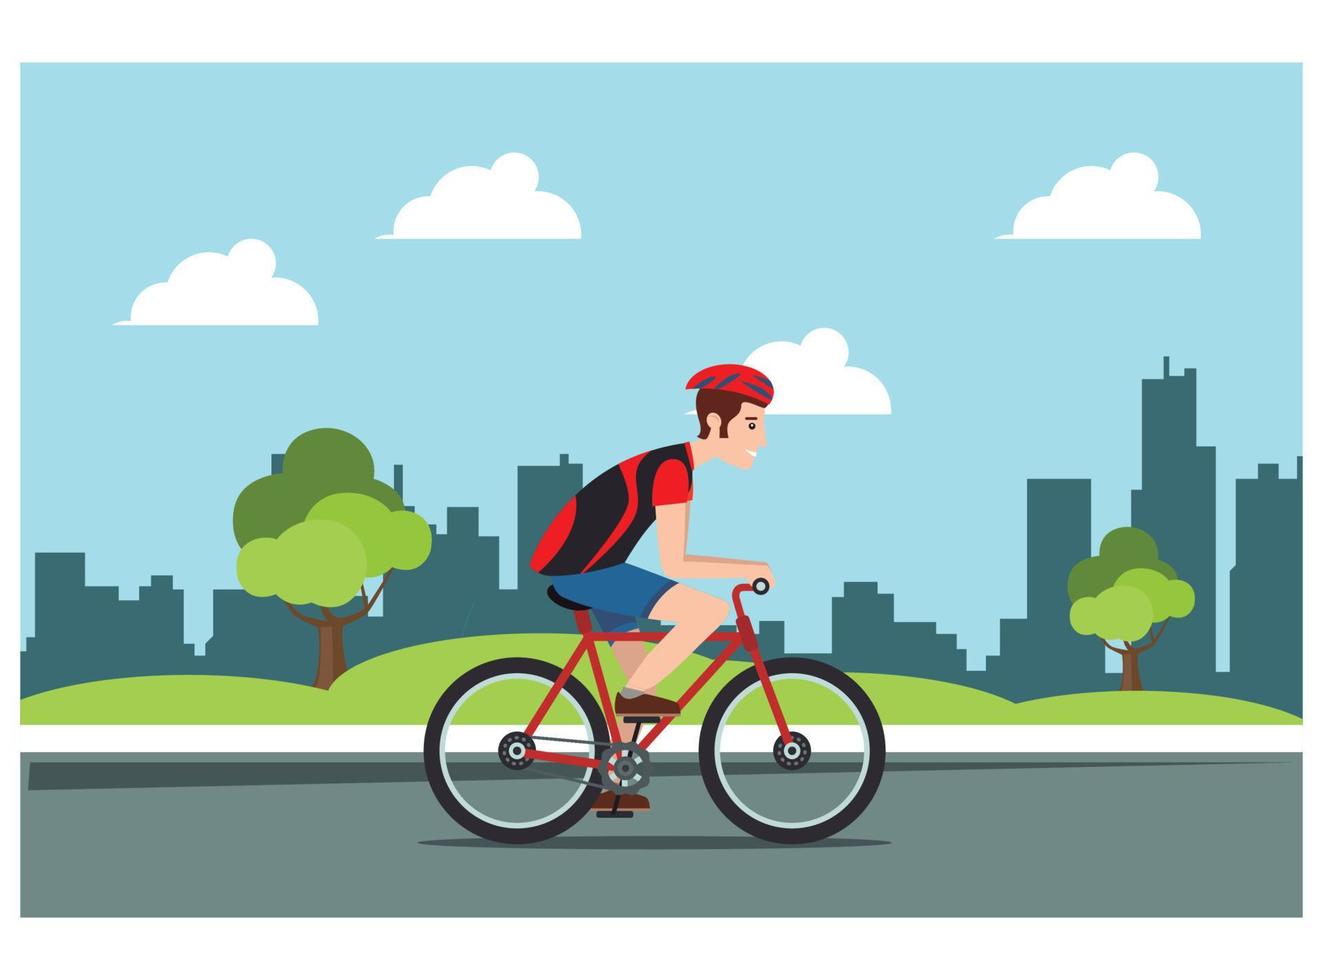 jovem andando de bicicleta esportiva em uma estrada do parque, vetor de ilustração de bicicleta humana